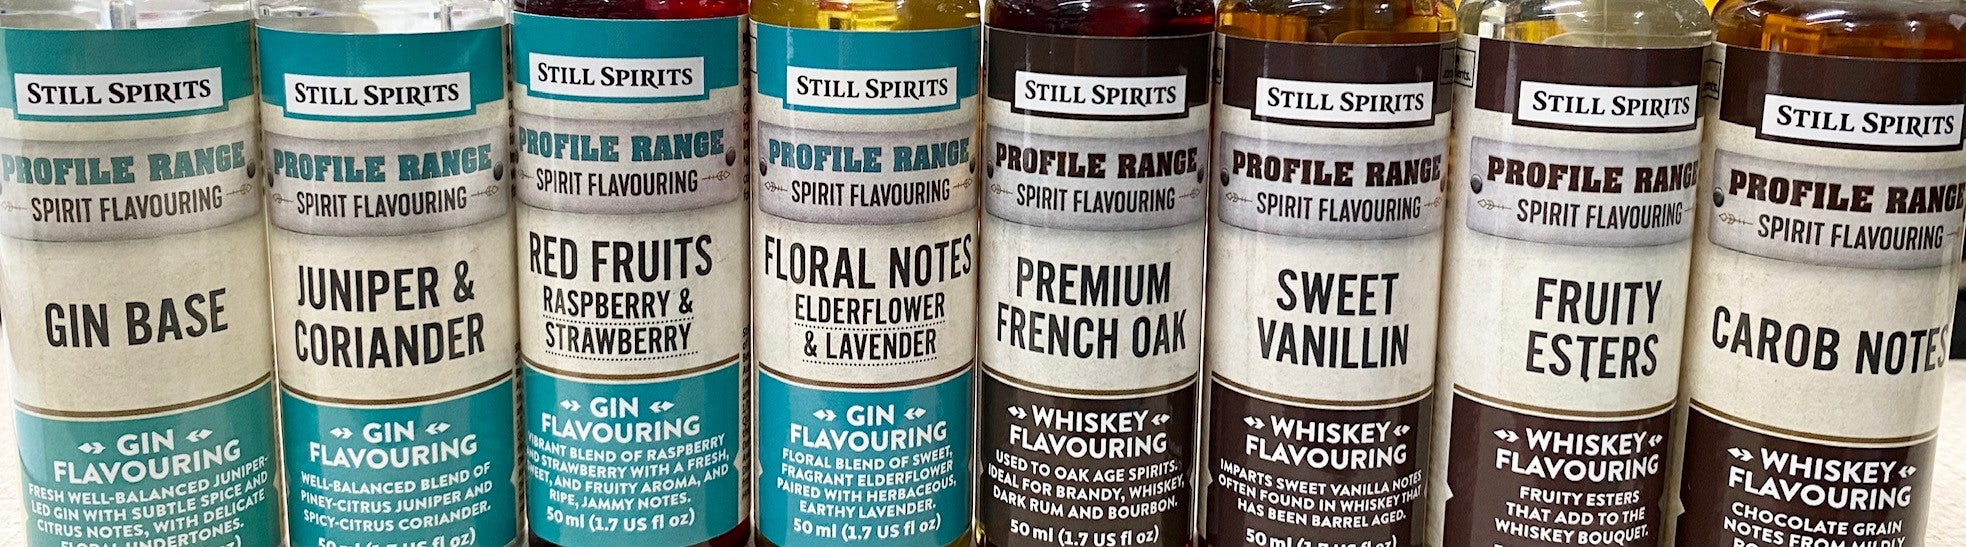 Still Spirits Gin Whiskey Profile Range